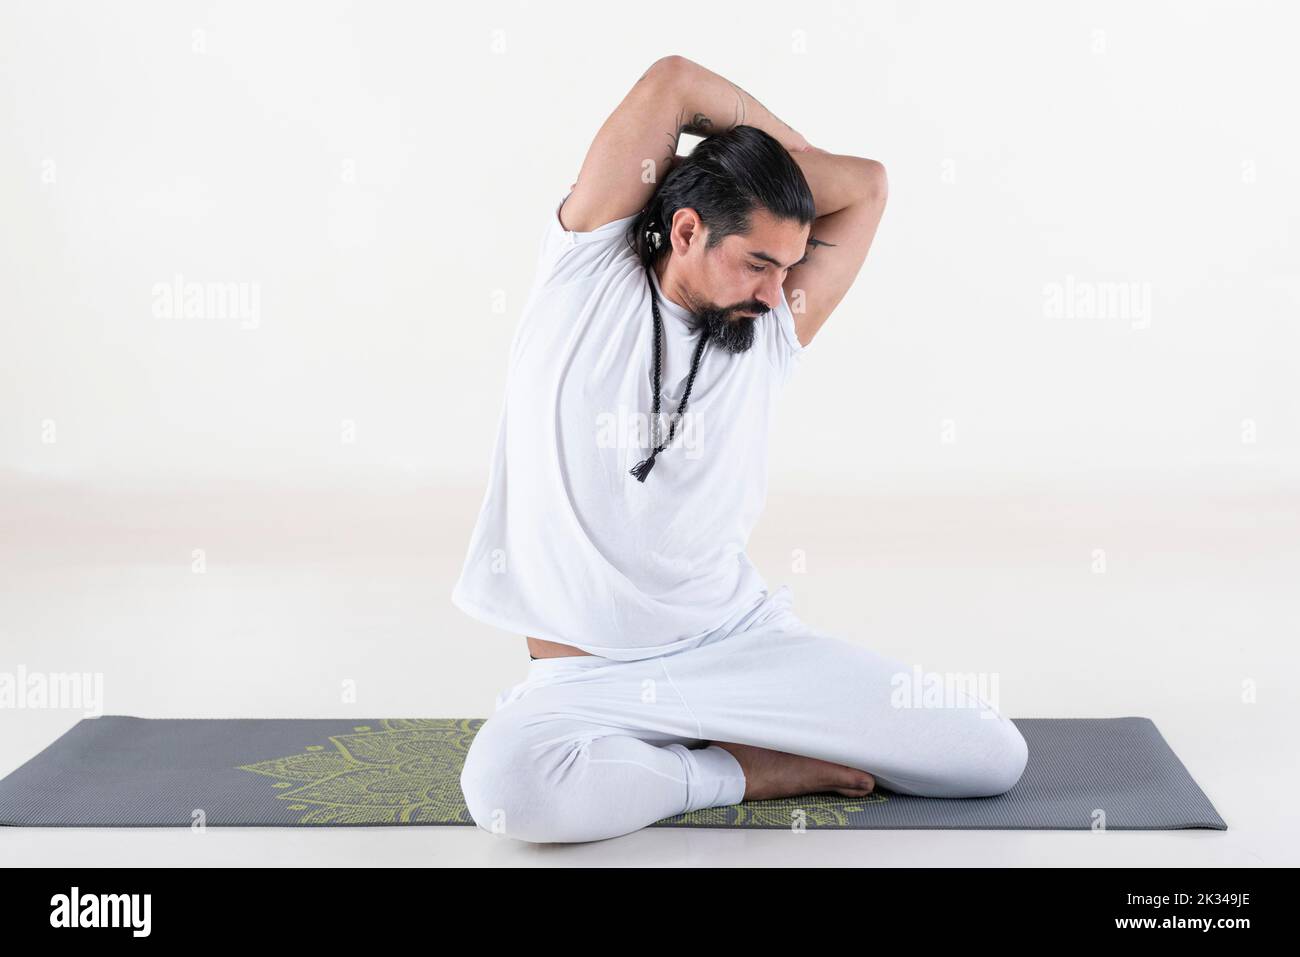 Un homme vêtu de blanc faisant du yoga sur un tapis sur fond blanc. Bharadvajasana pose de yoga. Prise de vue en studio Banque D'Images